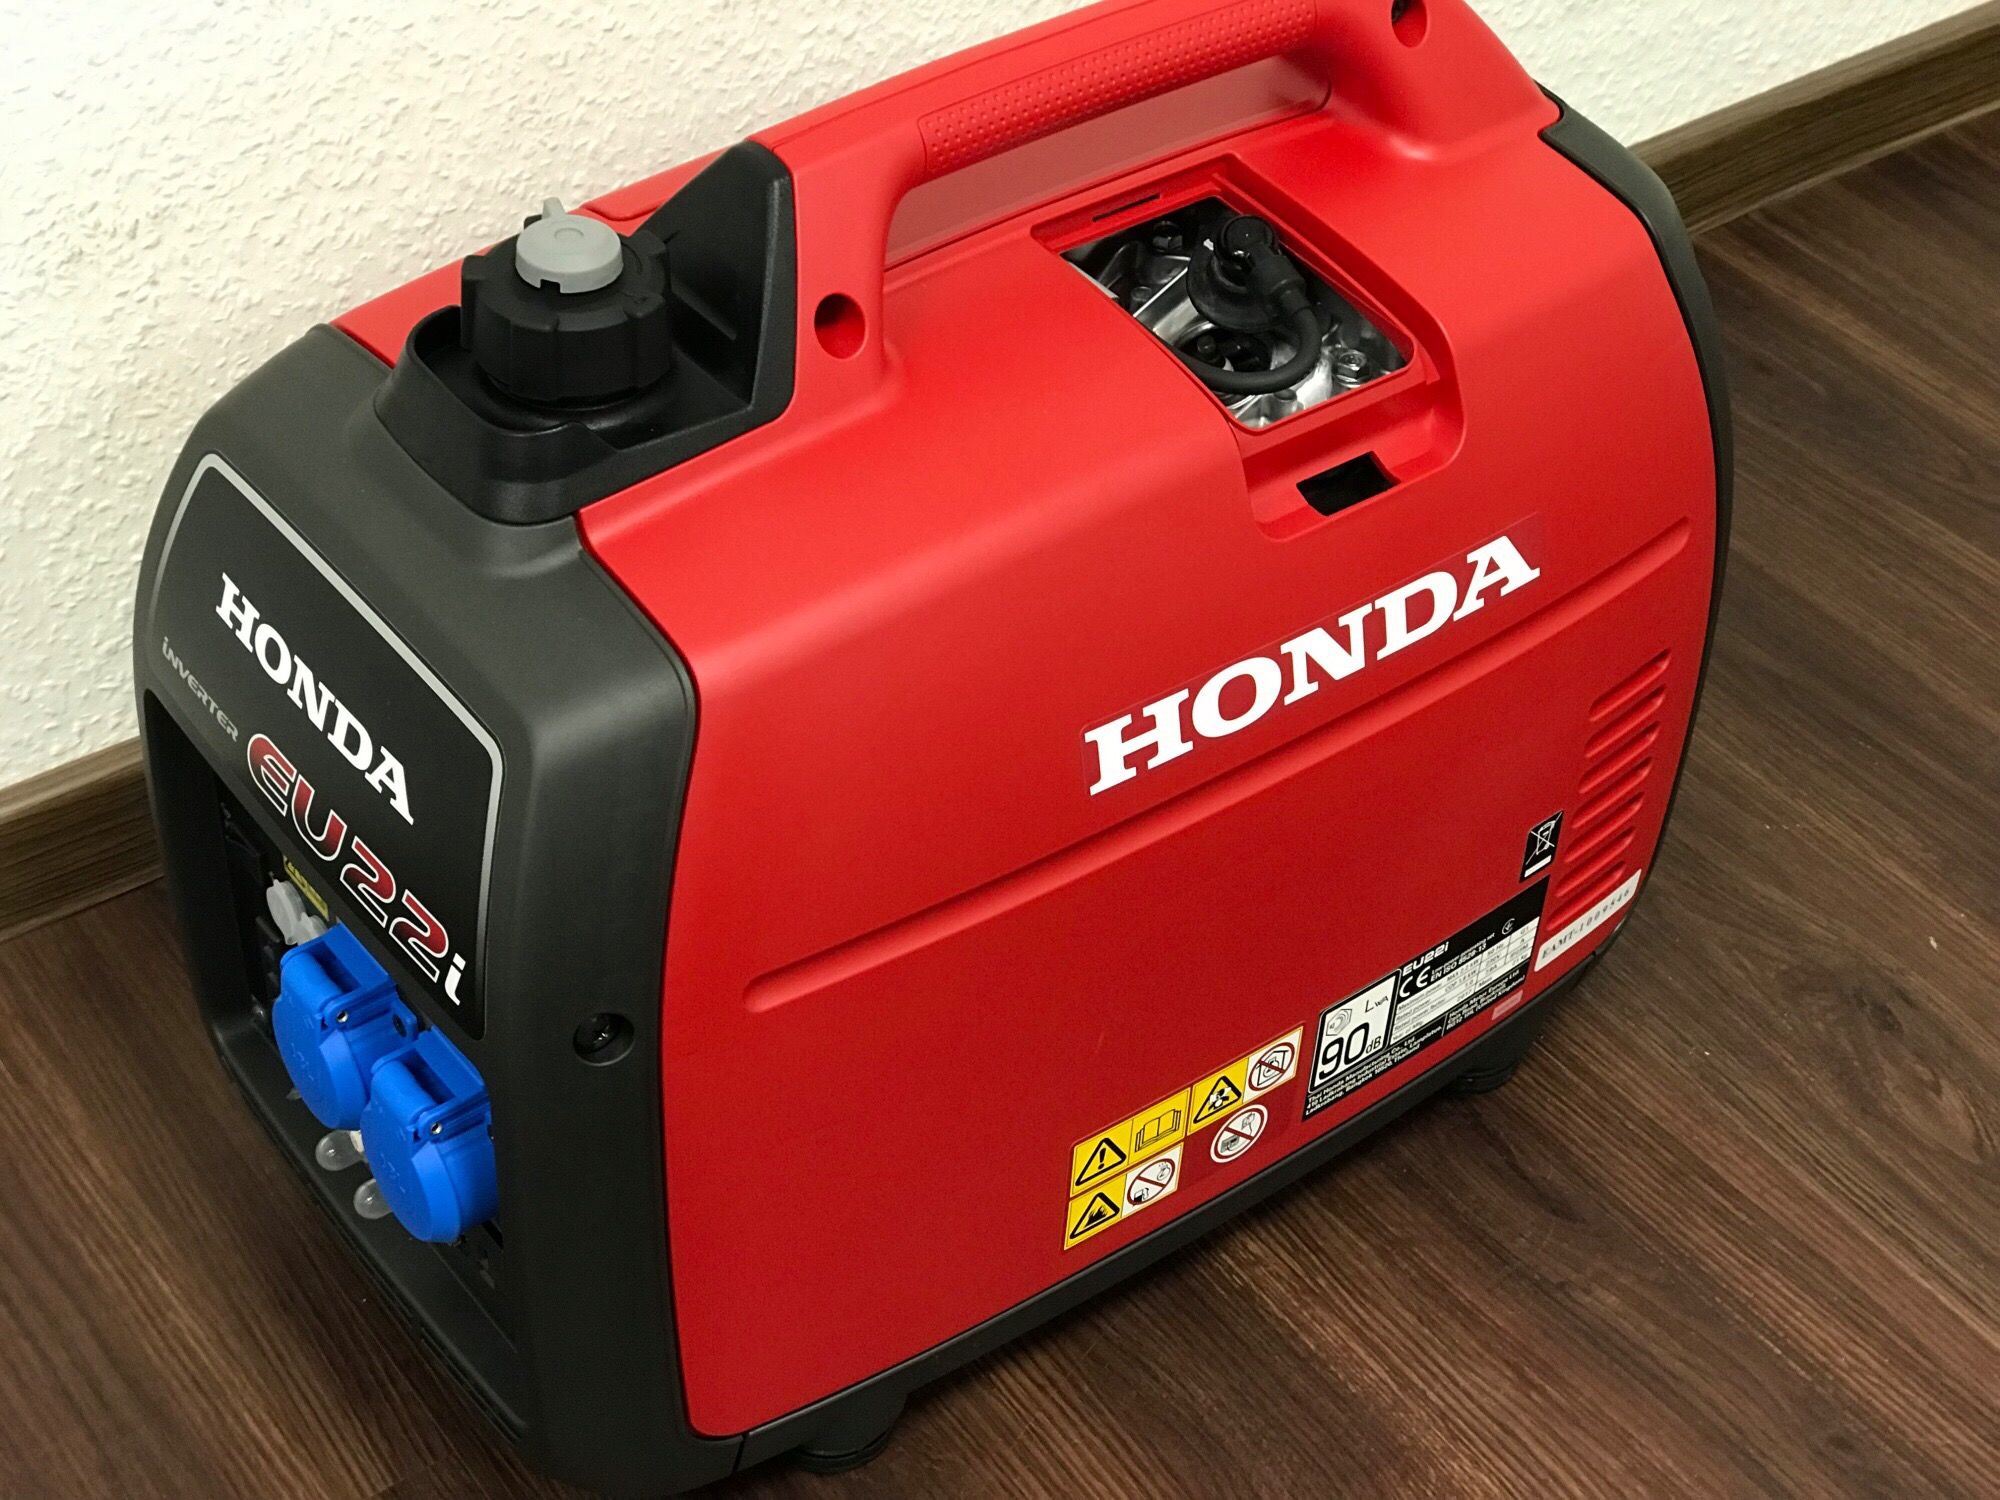 Honda Stromerzeuger EU 22i - Imkereibedarf Seiringer